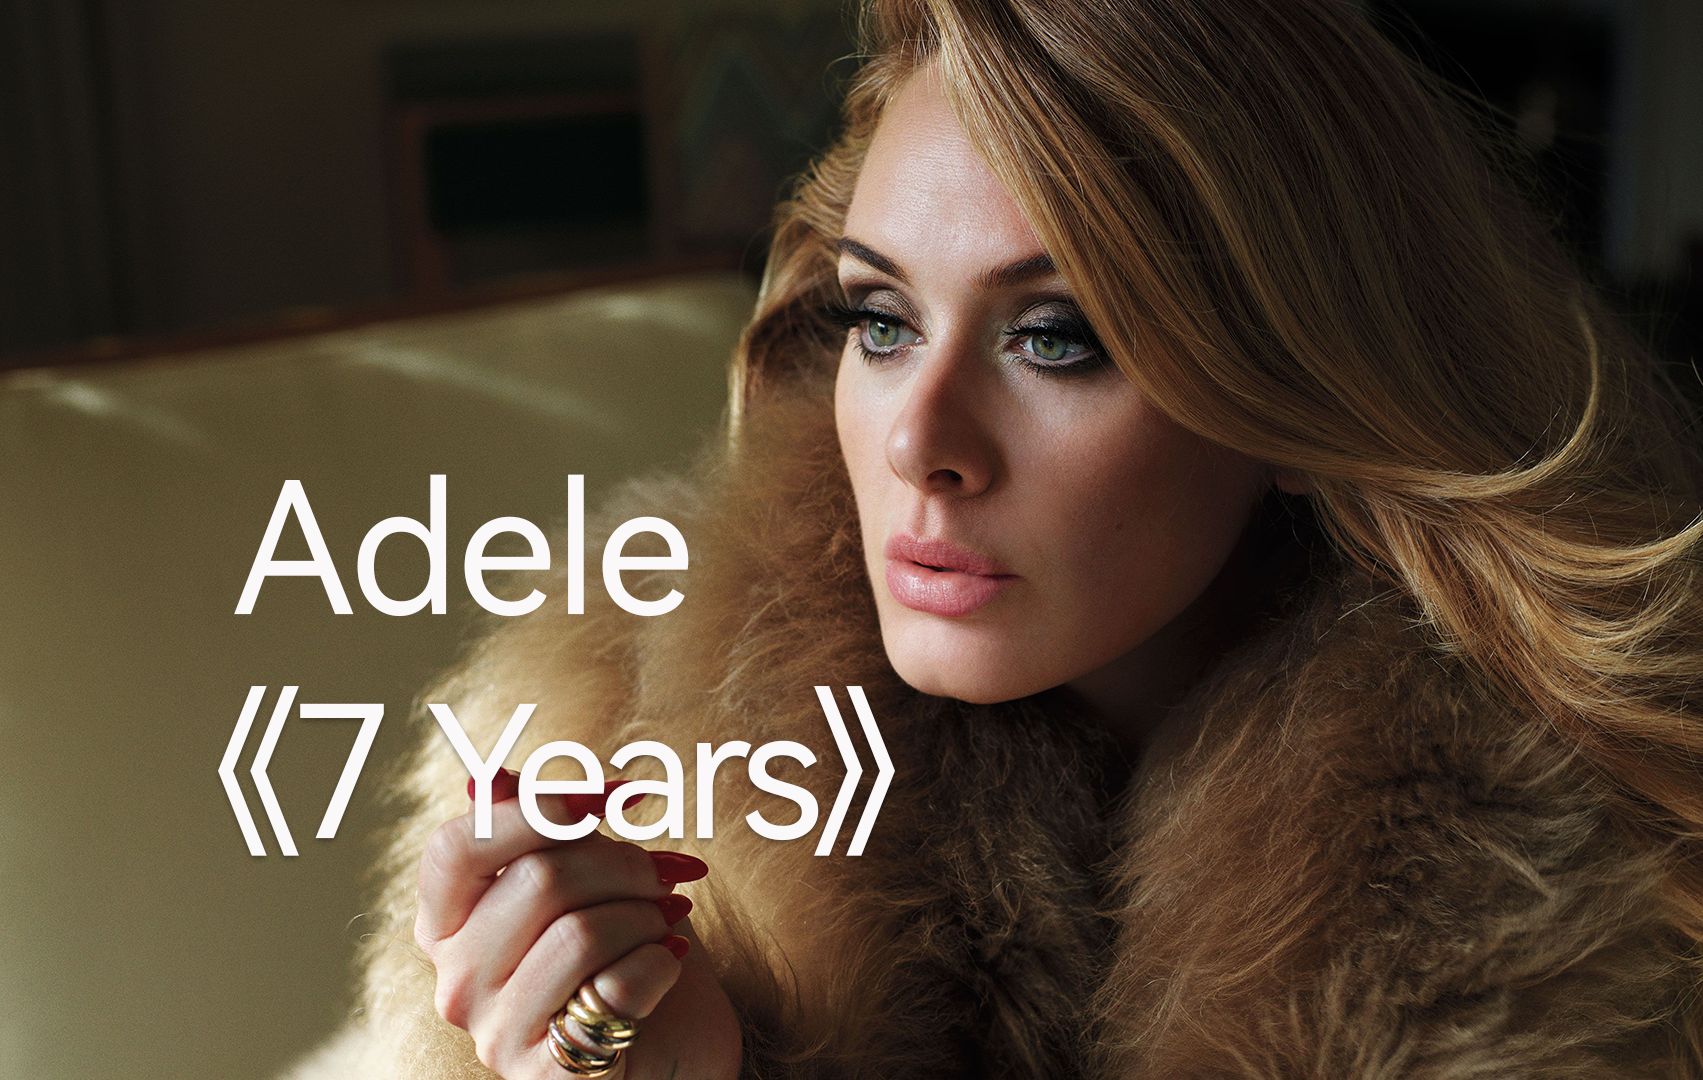 阿黛尔Adele翻唱人生感悟必听曲《7 Years》